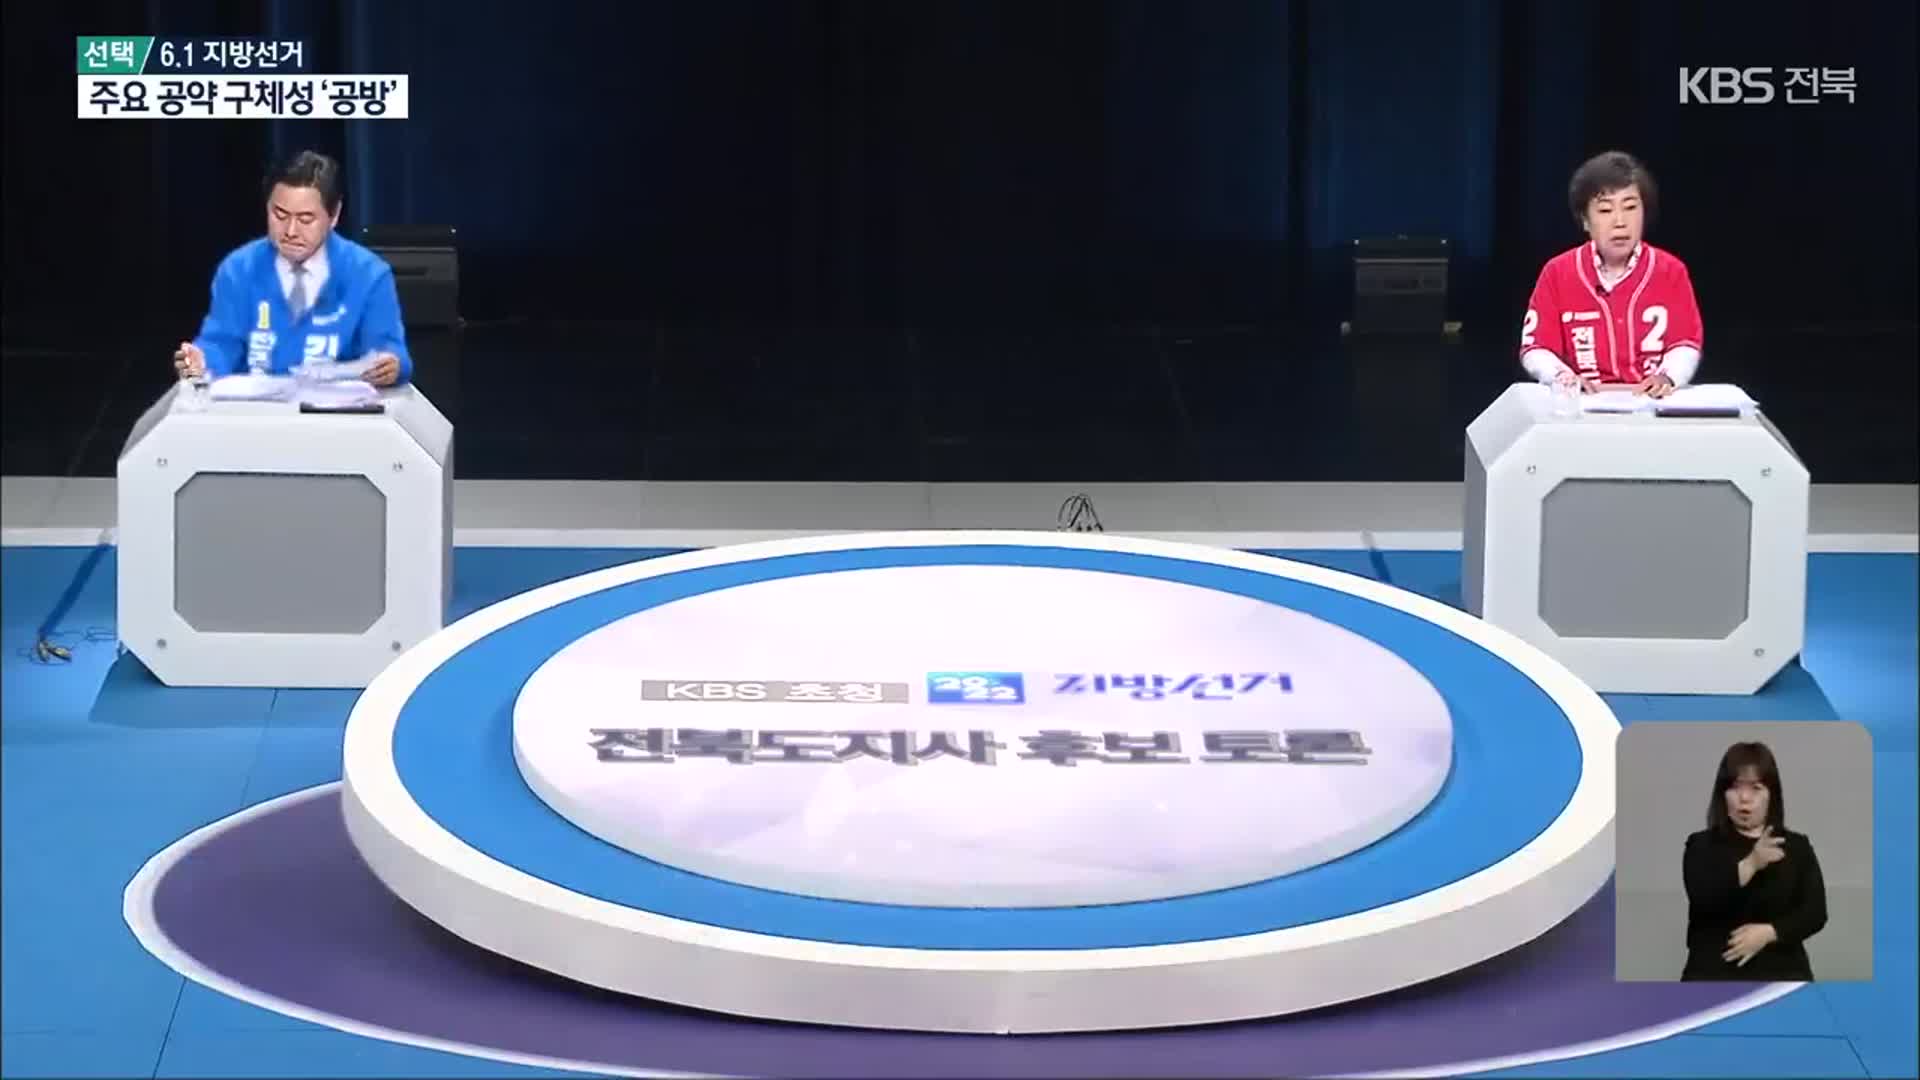 [전북] 전북도지사 토론회서 주요 공약 ‘공방’…“내가 적임자”